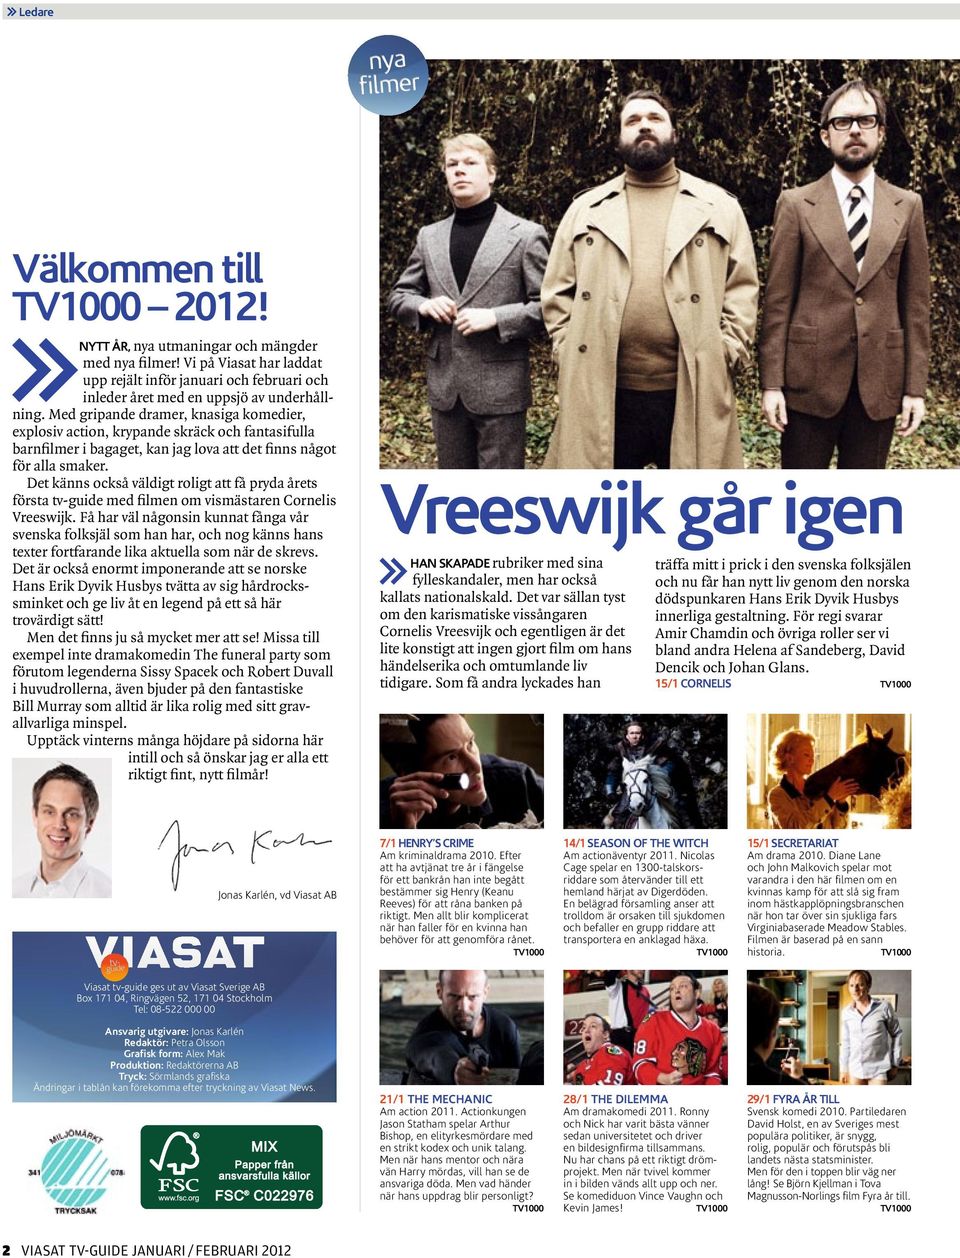 Det känns också väldigt roligt att få pryda årets första tv-guide med filmen om vismästaren Cornelis Vreeswijk.